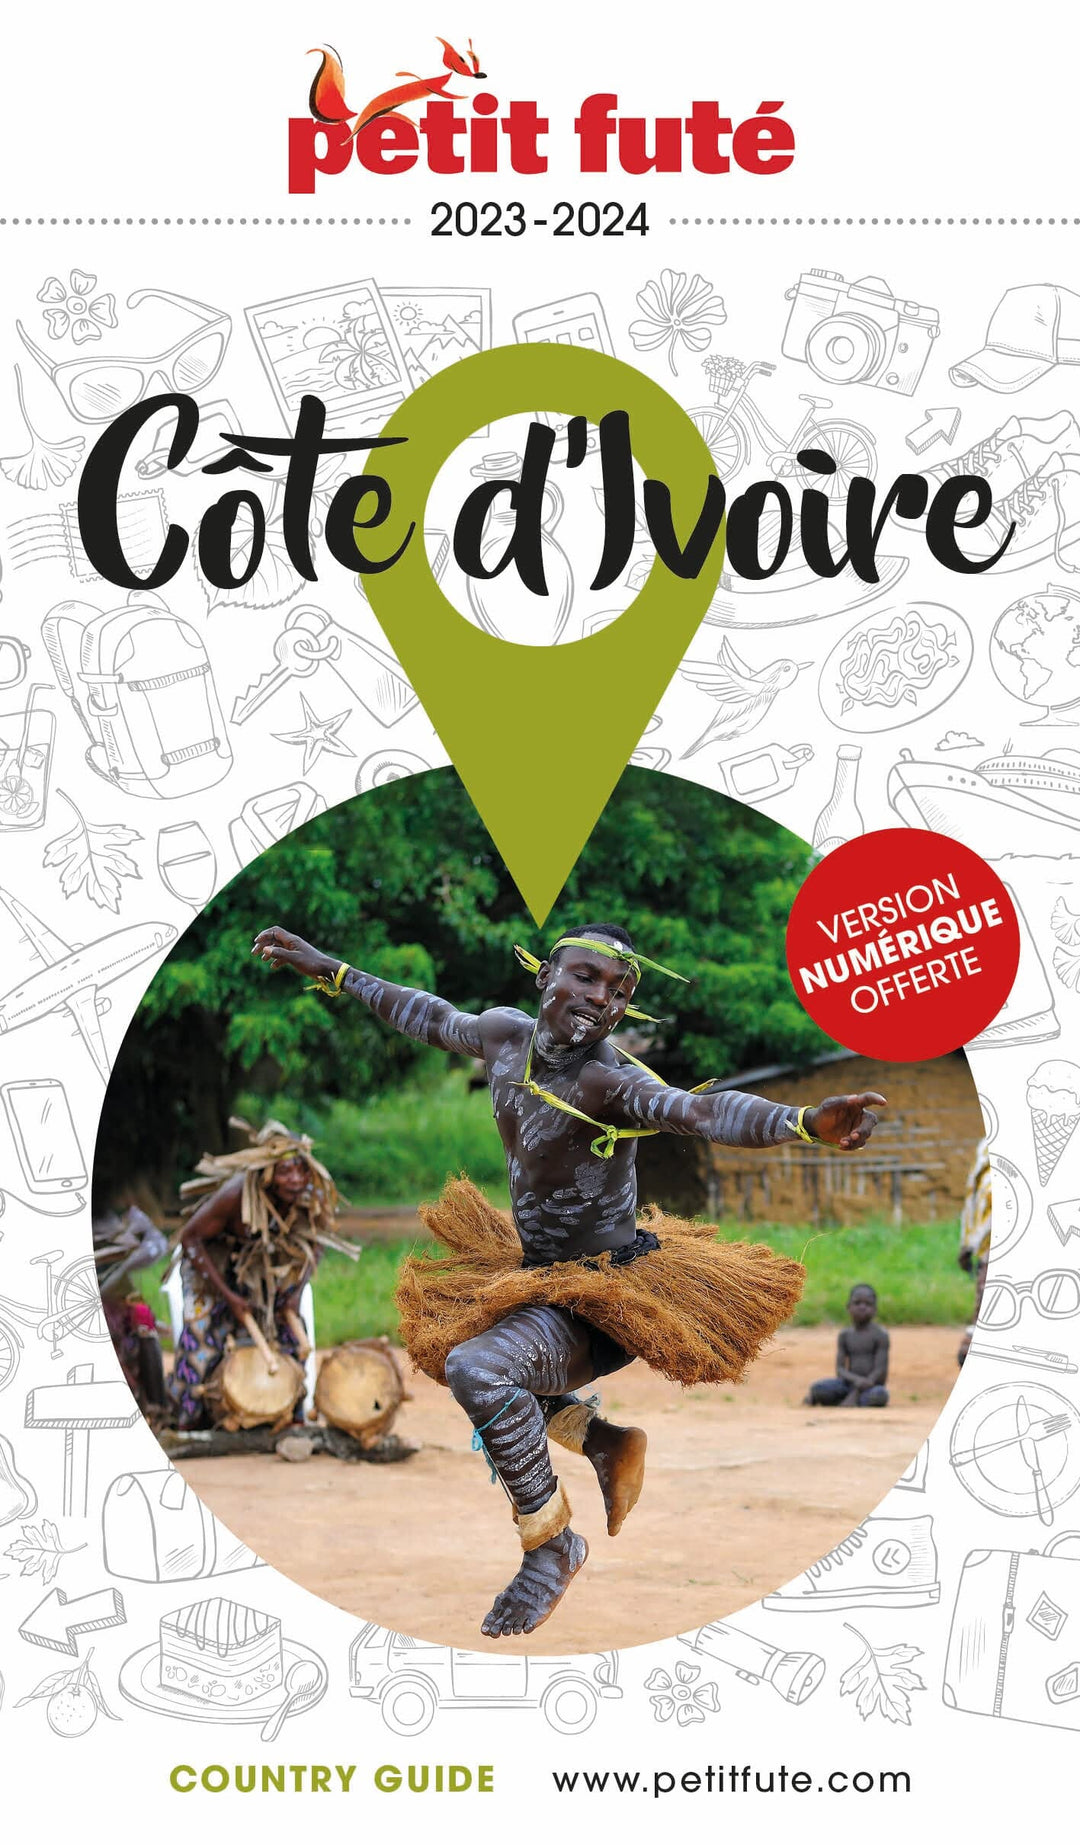 Guide de voyage - Côte d'Ivoire 203/24 | Petit Futé guide de voyage Petit Futé 